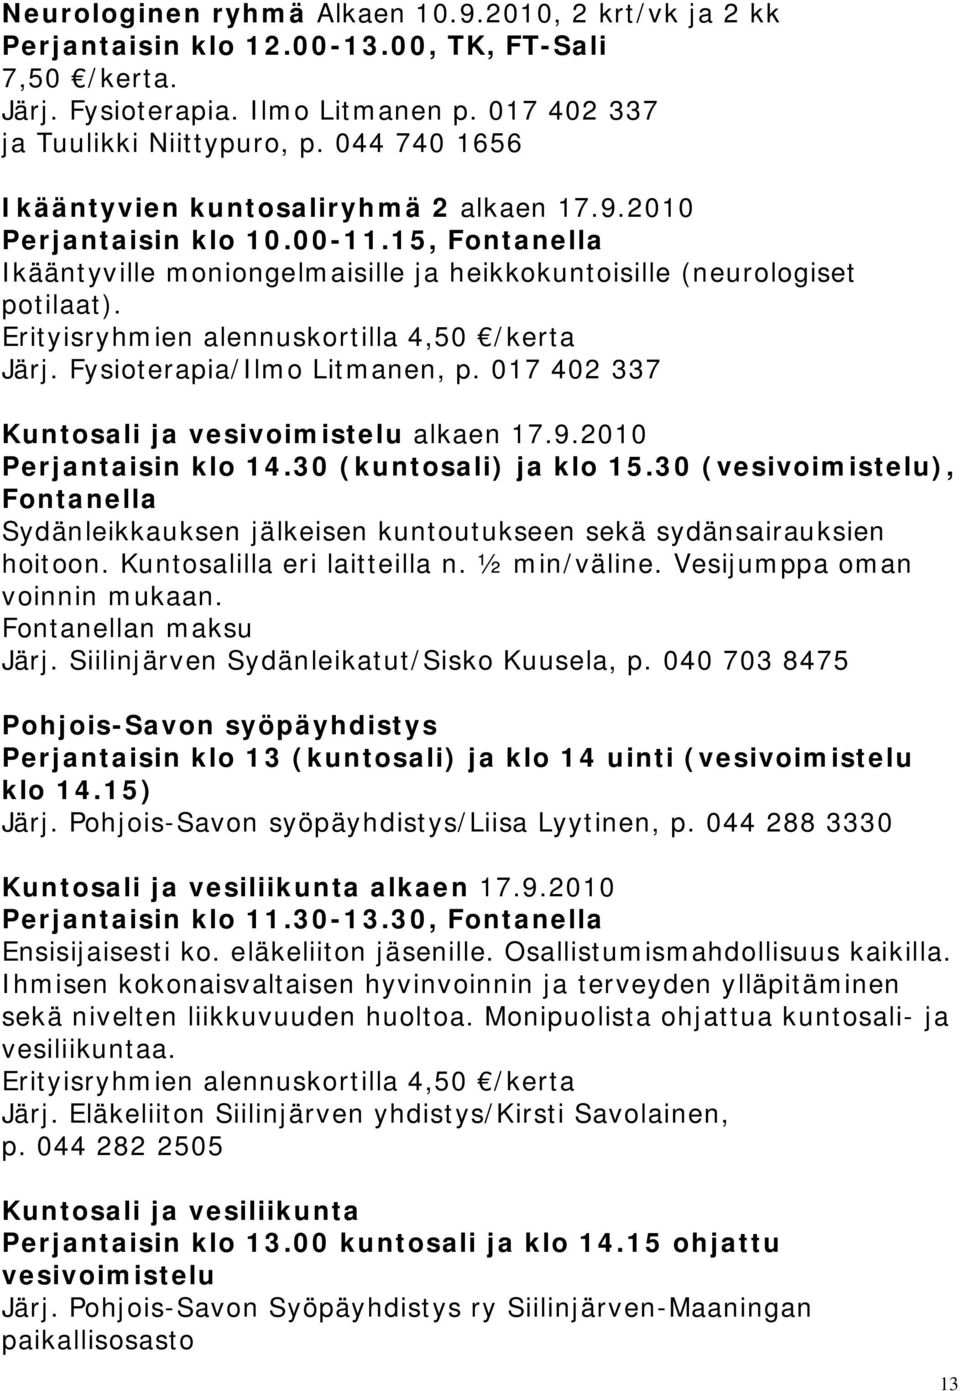 Erityisryhmien alennuskortilla 4,50 /kerta Järj. Fysioterapia/Ilmo Litmanen, p. 017 402 337 Kuntosali ja vesivoimistelu alkaen 17.9.2010 Perjantaisin klo 14.30 (kuntosali) ja klo 15.